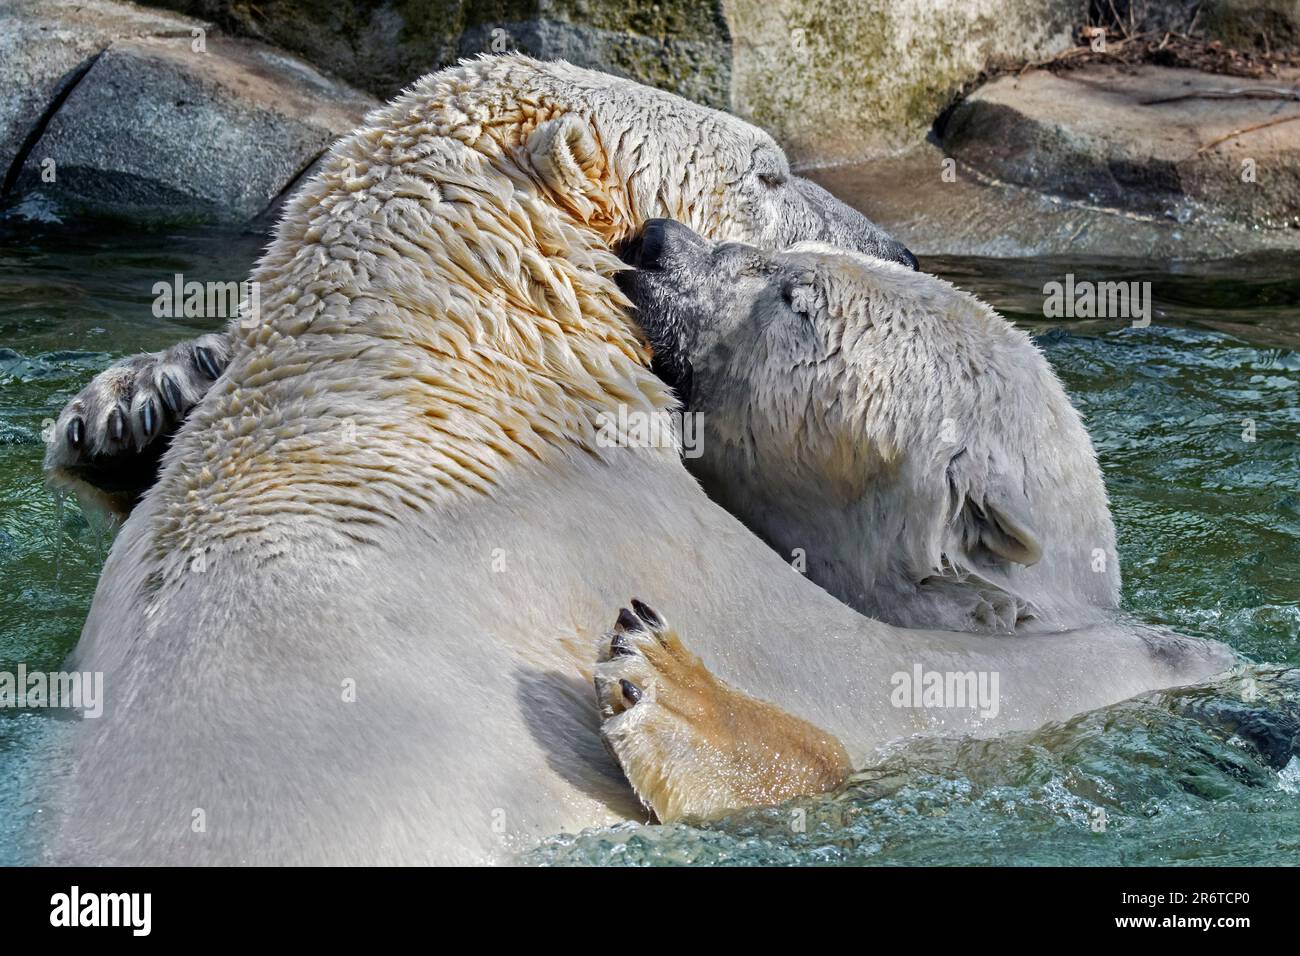 Deux ours polaires captifs (Ursus maritimus) embrassant / en cuddling dans l'eau de la piscine au zoo lors d'une journée chaude en été Banque D'Images